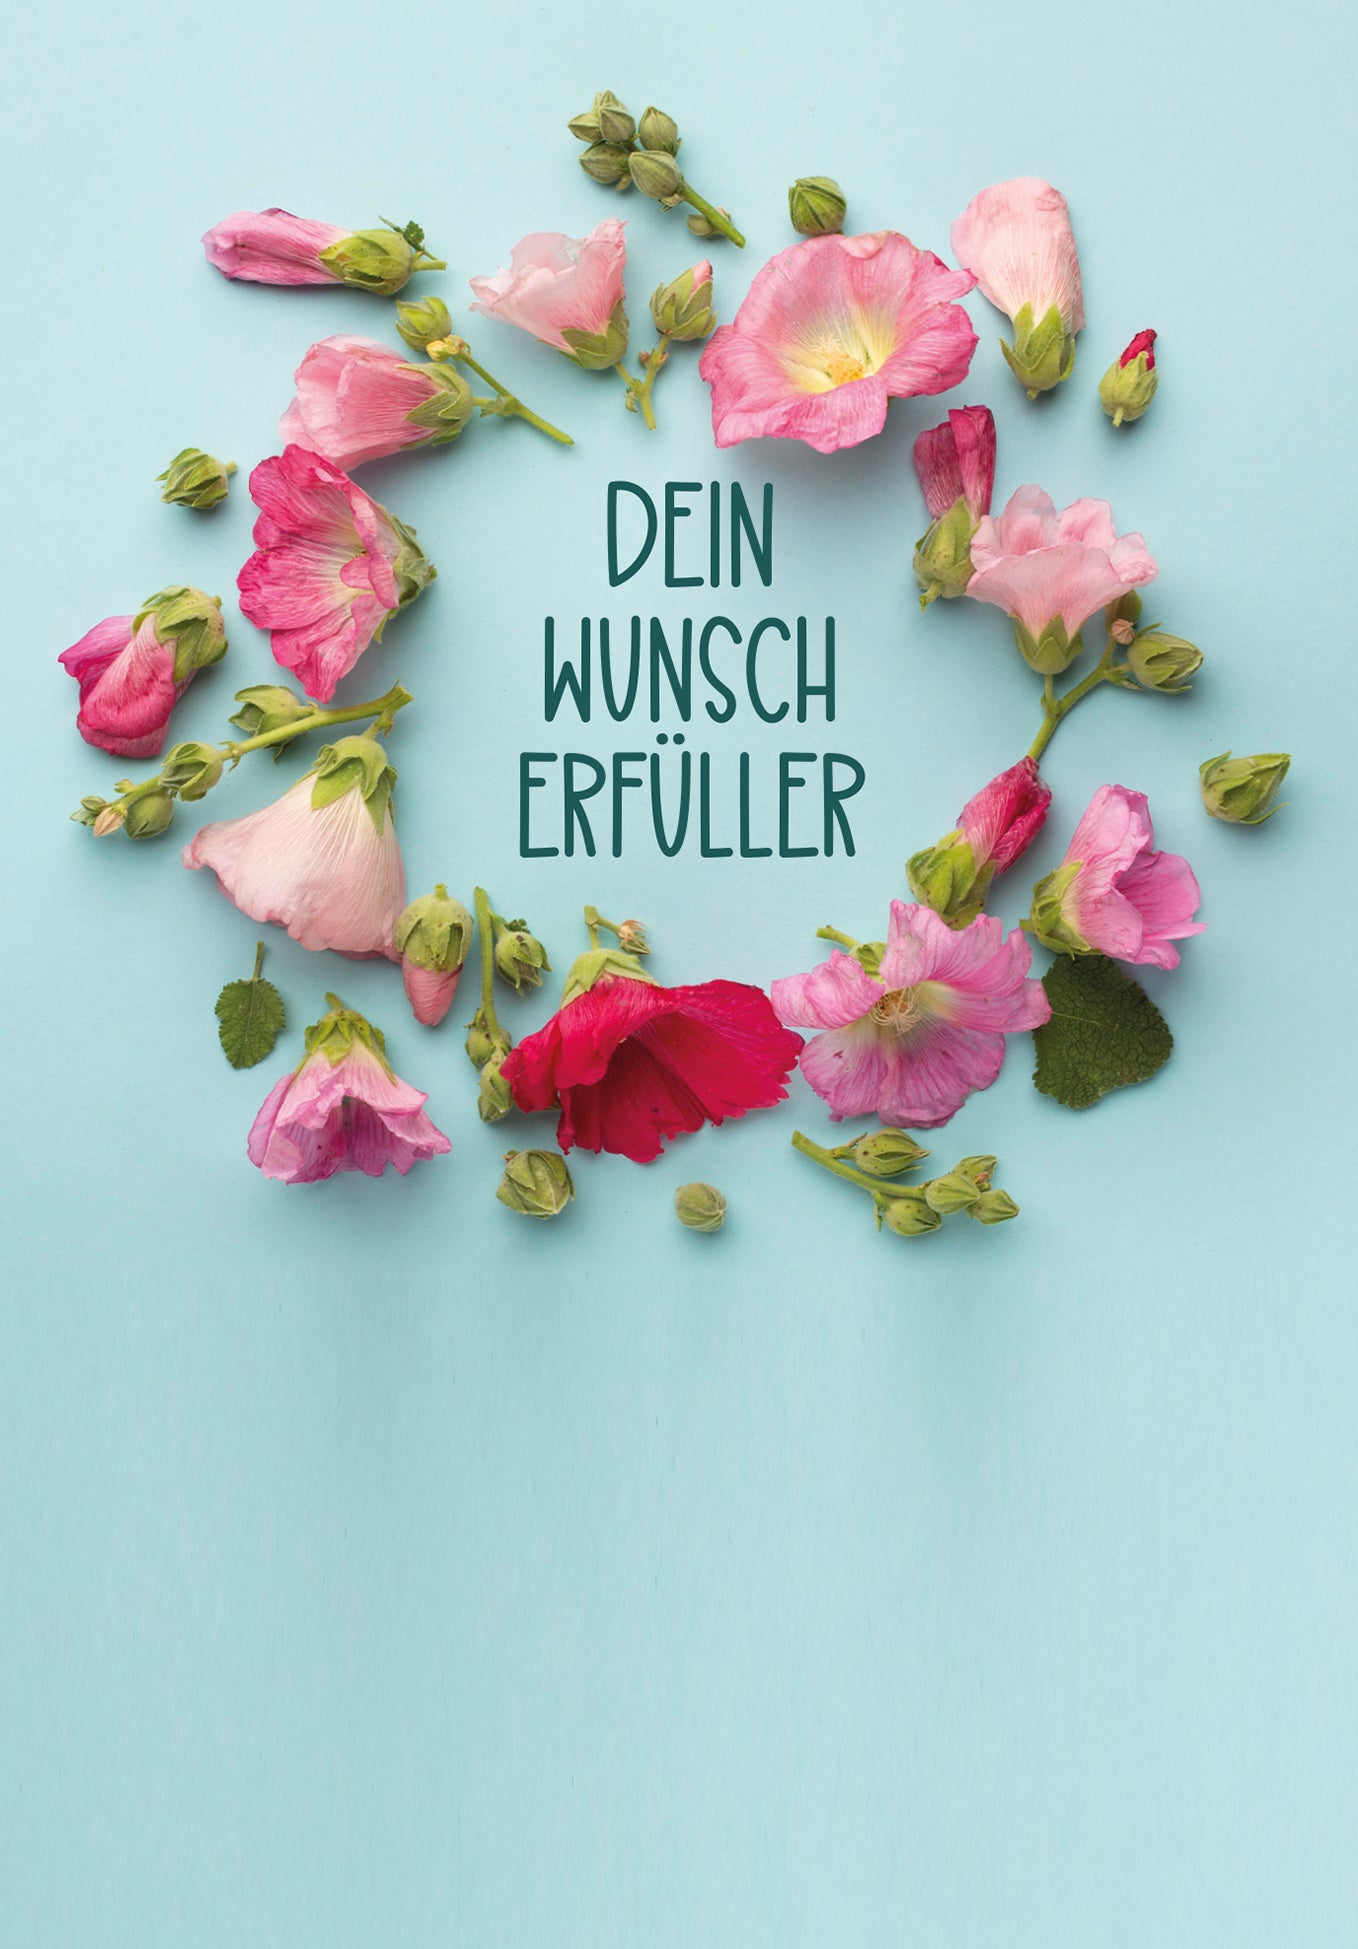 Dein Wunscherfüller - Blumen Kreis (Gutscheinwert)